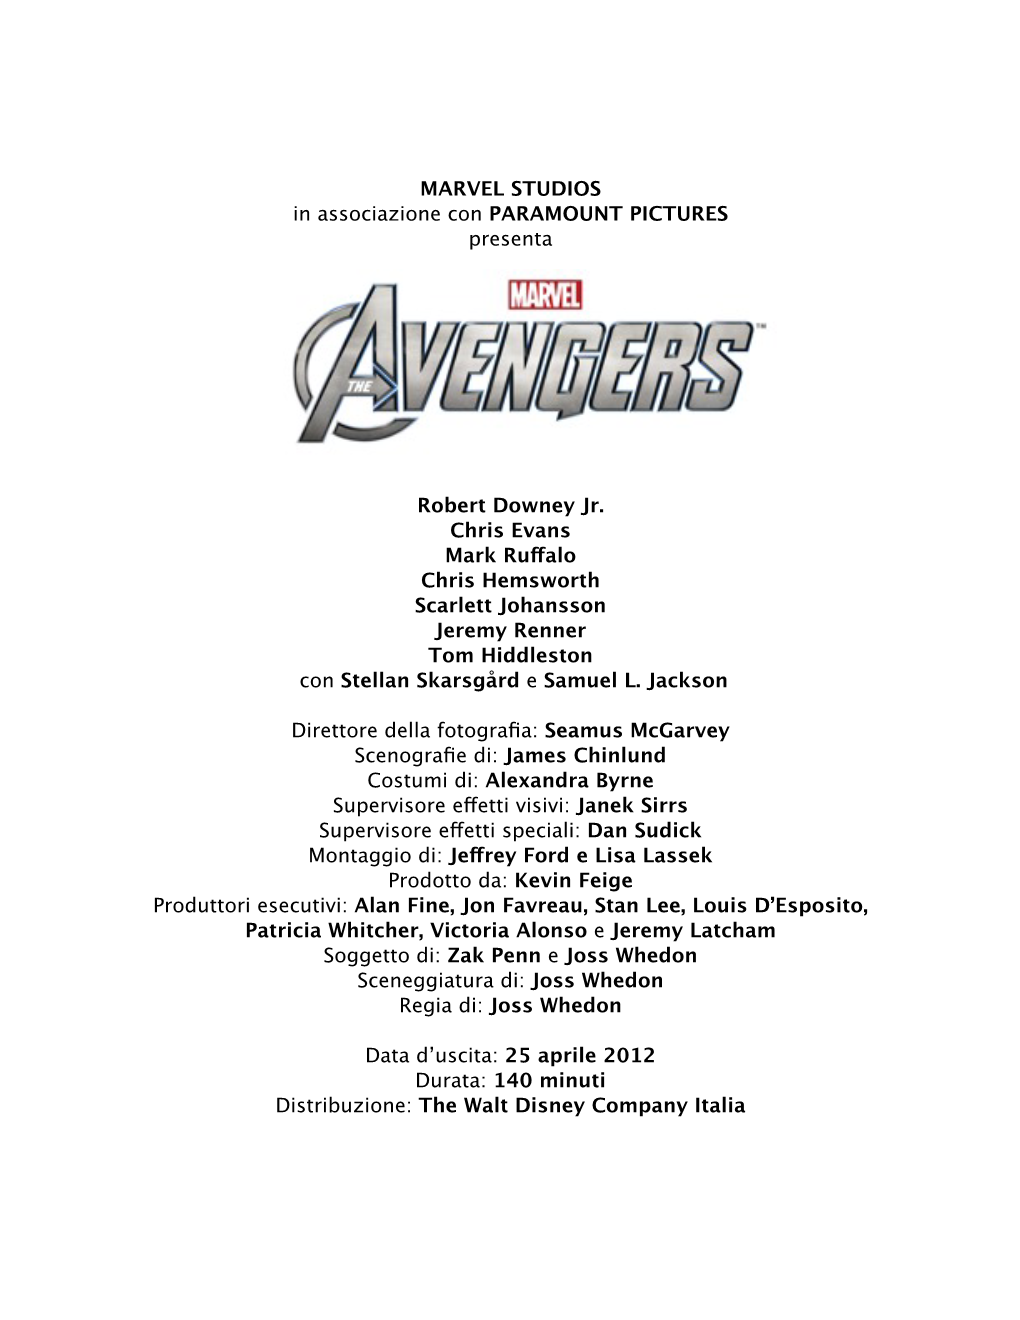 The Avengers”, Il Più Atteso Evento Cinematograﬁco Dell’Anno